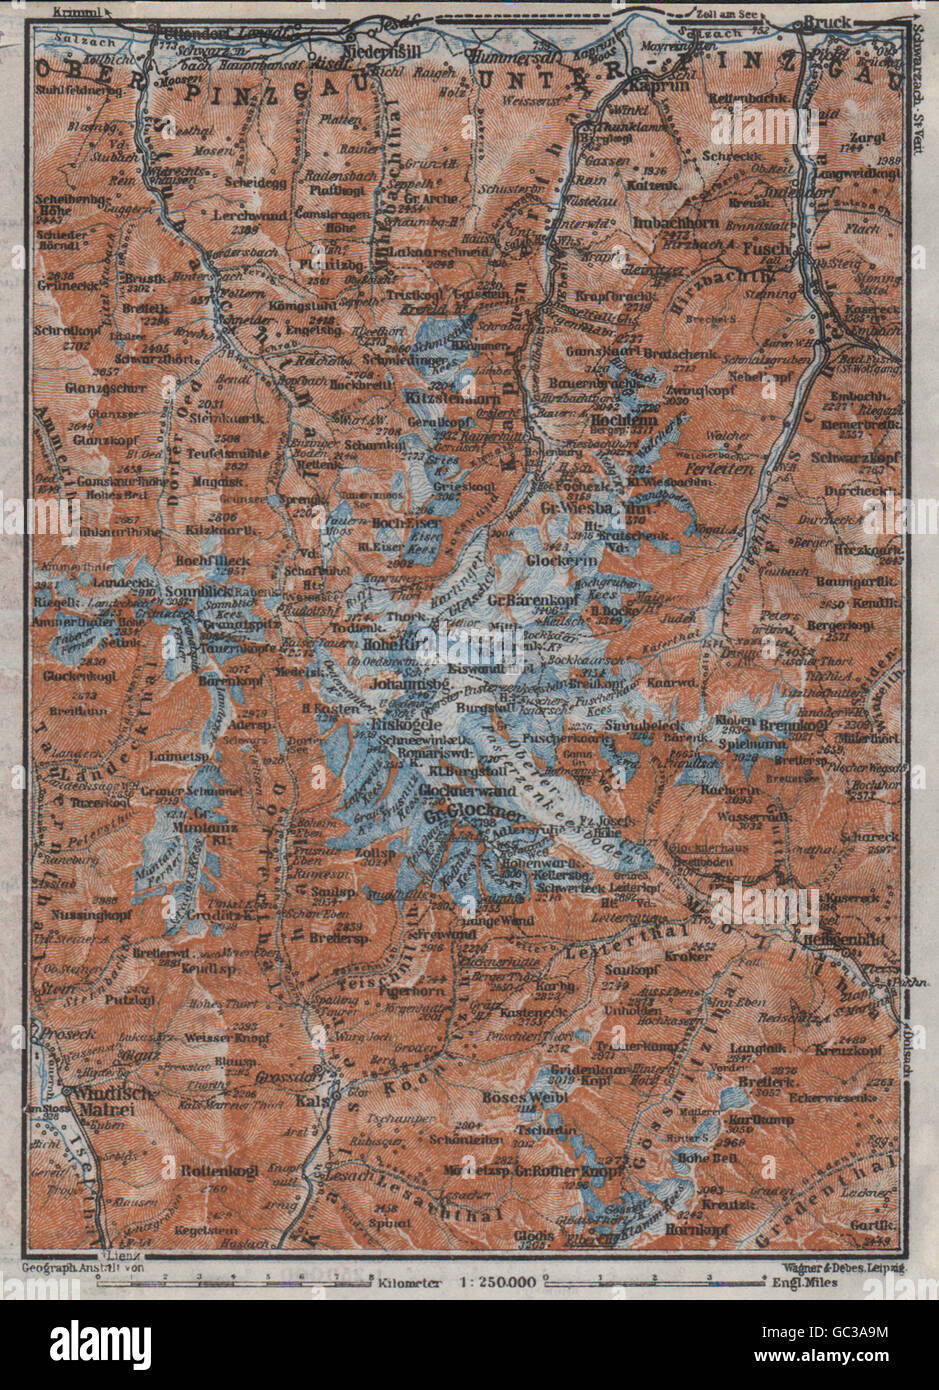 GLOCKNERGRUPPE HOHE TAUERN Kaprun Matrei Grossdorf 1911 map UNTERPINZGAU 